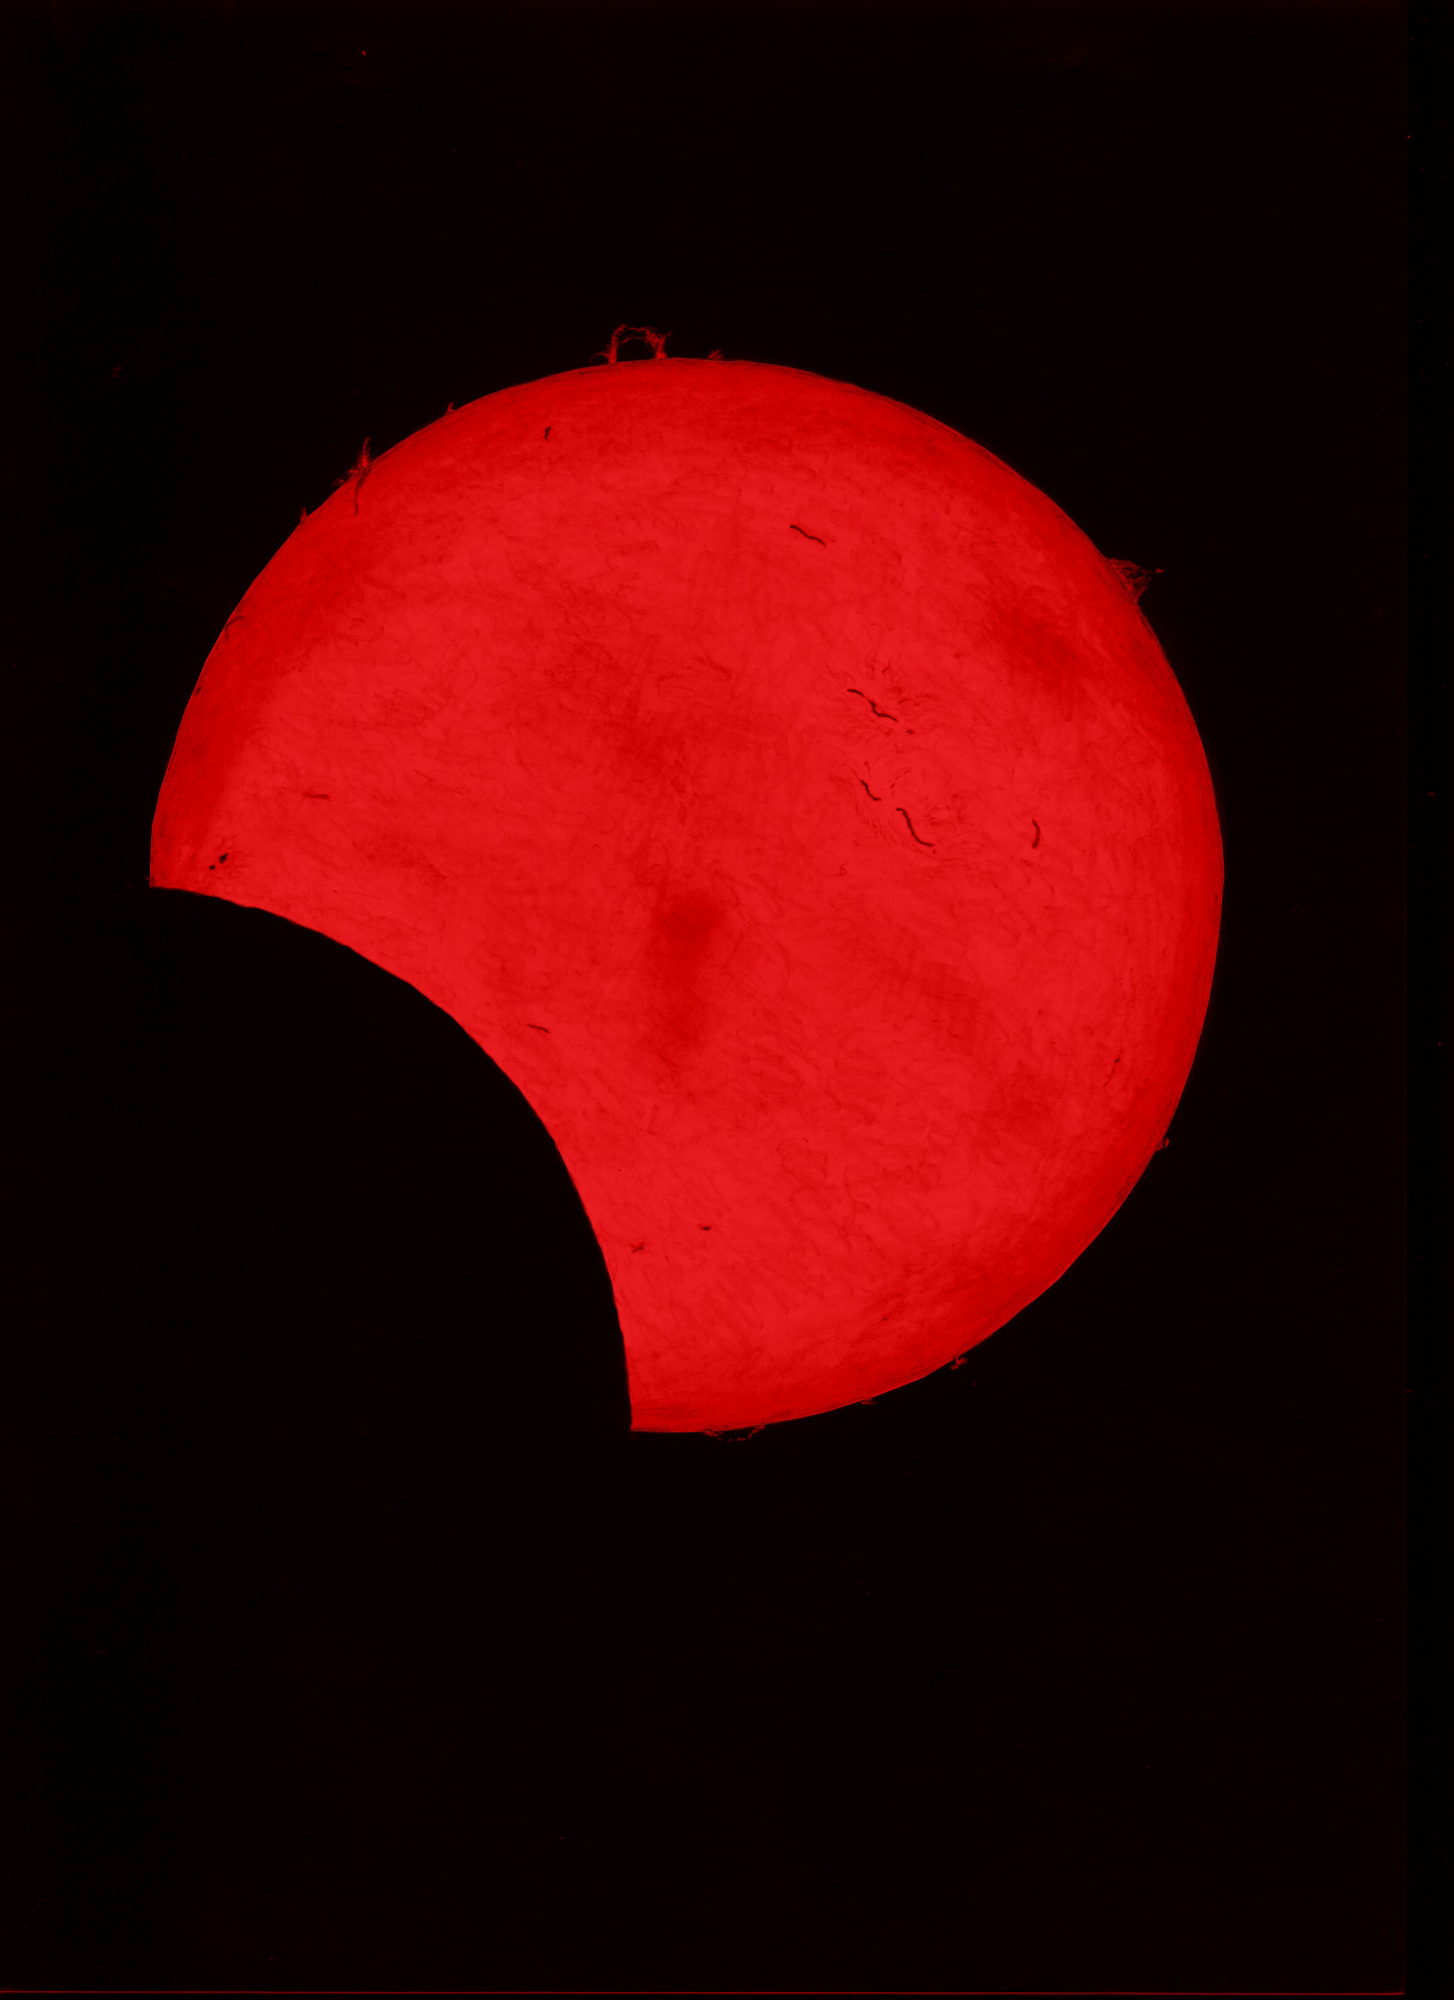 Eclipse 24 10 22 008.jpg